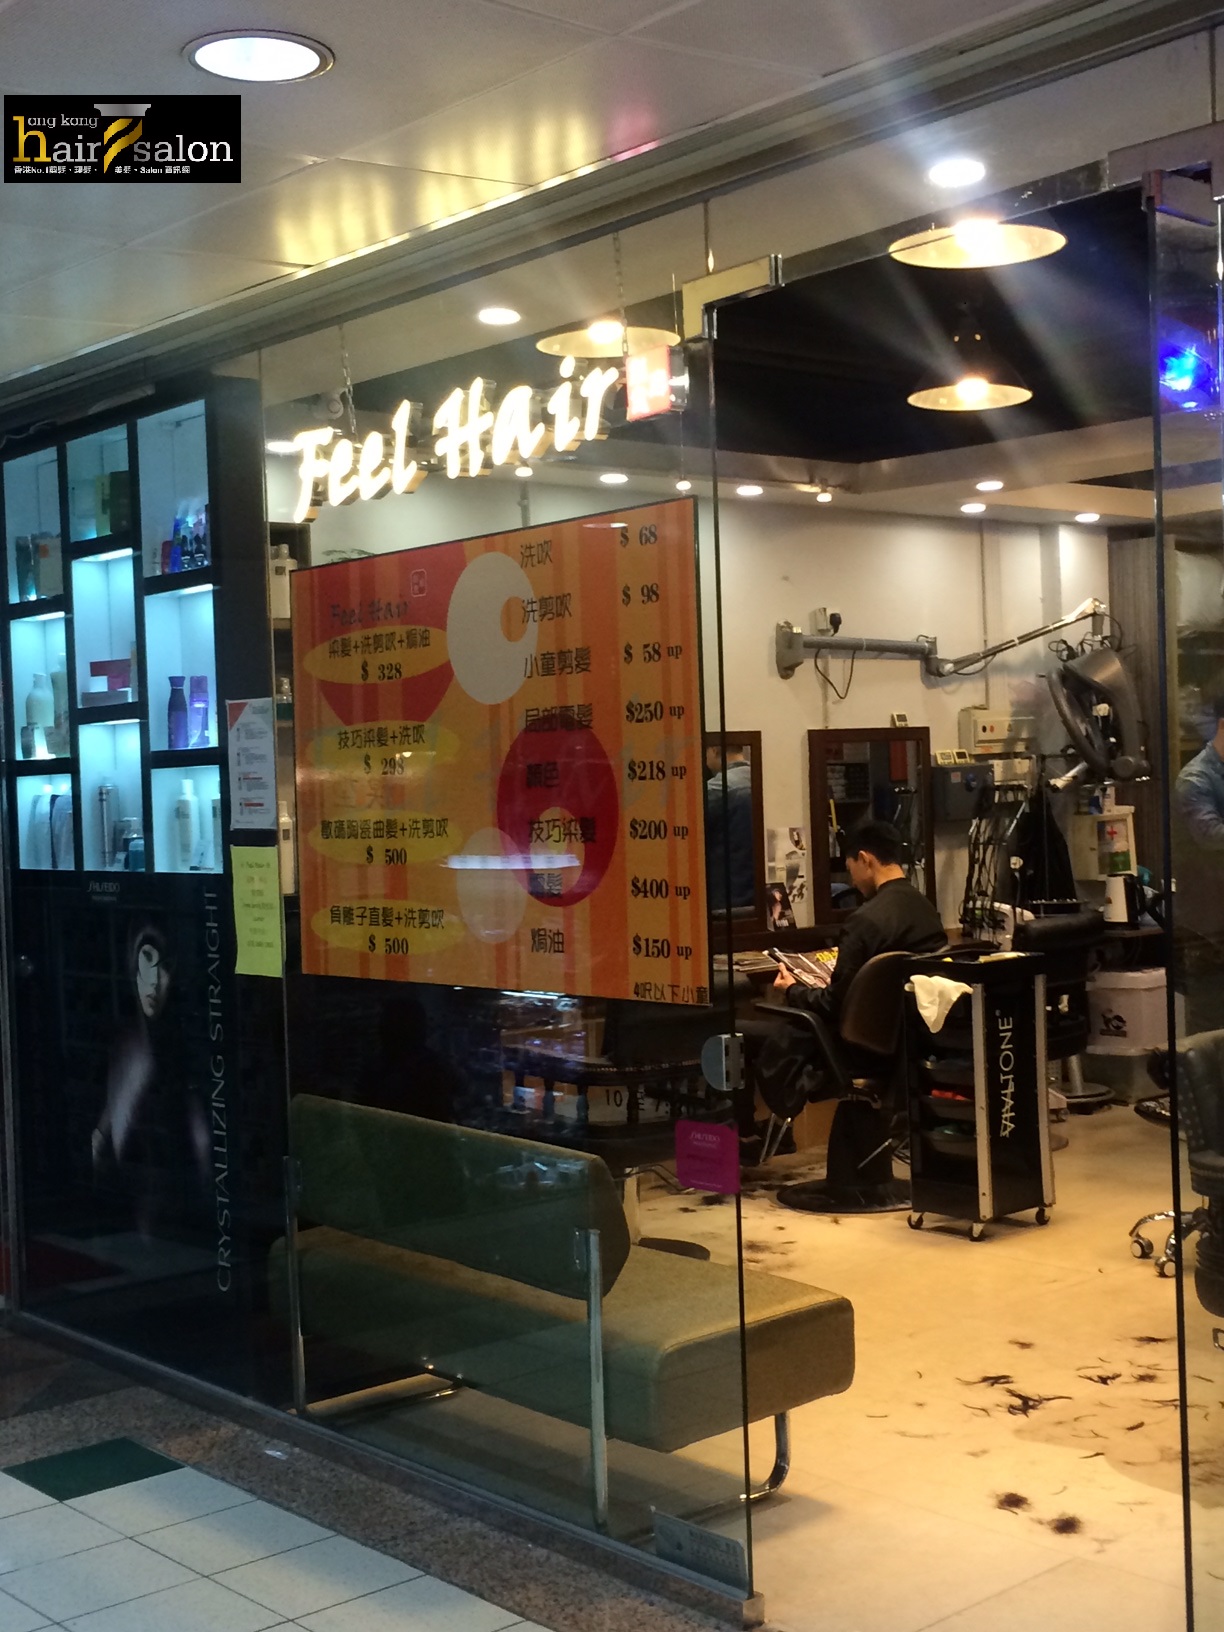 香港美髮網 HK Hair Salon 髮型屋Salon / 髮型師: Feel Hair Salon 創意廊